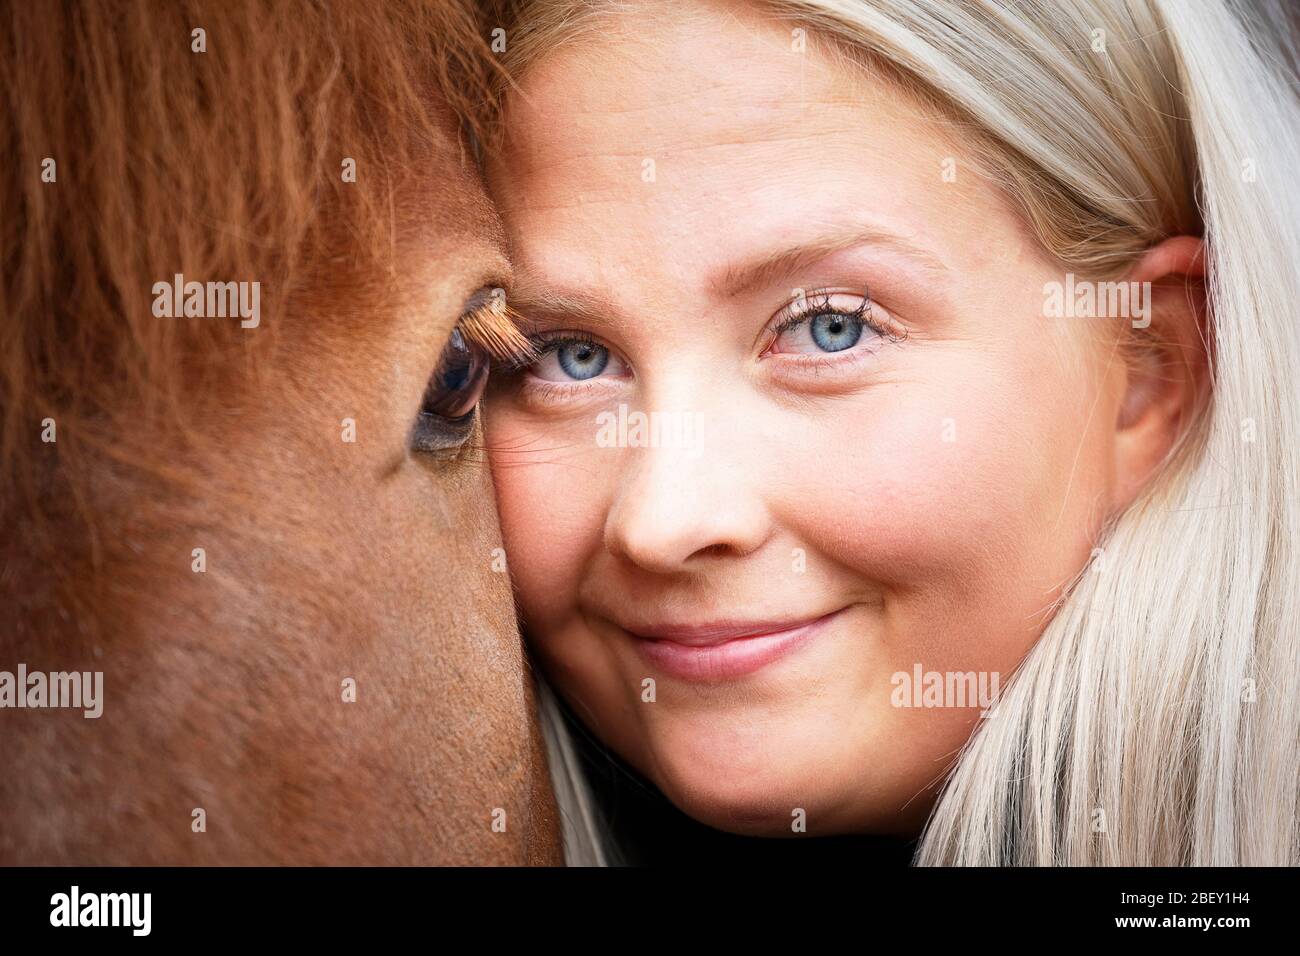 Isländisches Pferd. Eine junge Frau umarmt ihren Kopf gegen den Kopf eines erwachsenen Pferdes. Island Stockfoto